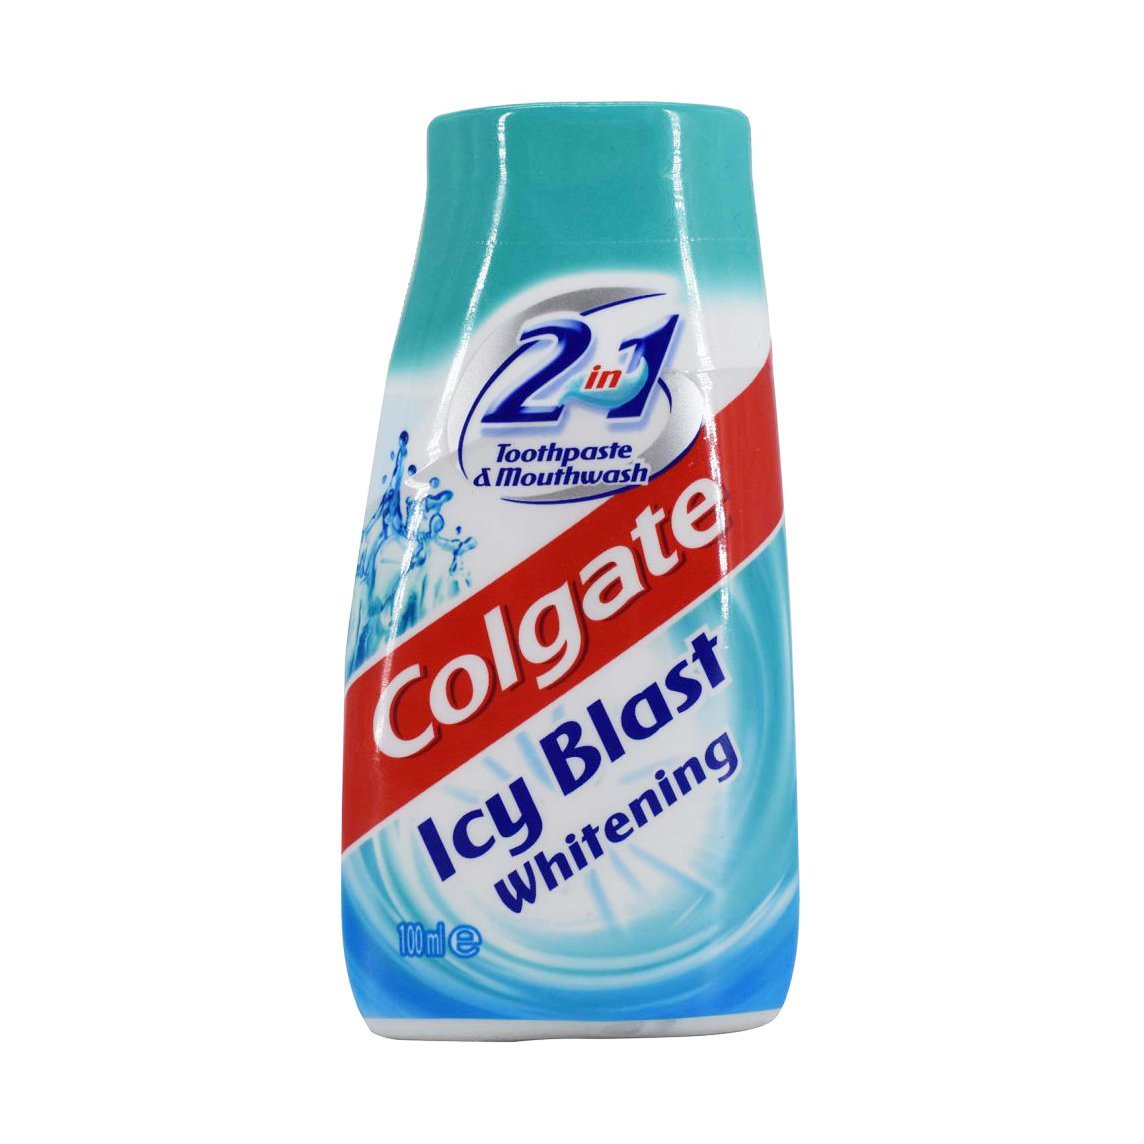 Colgate 2in1 Icy Blast - 100ml - Bloom Pharmacy